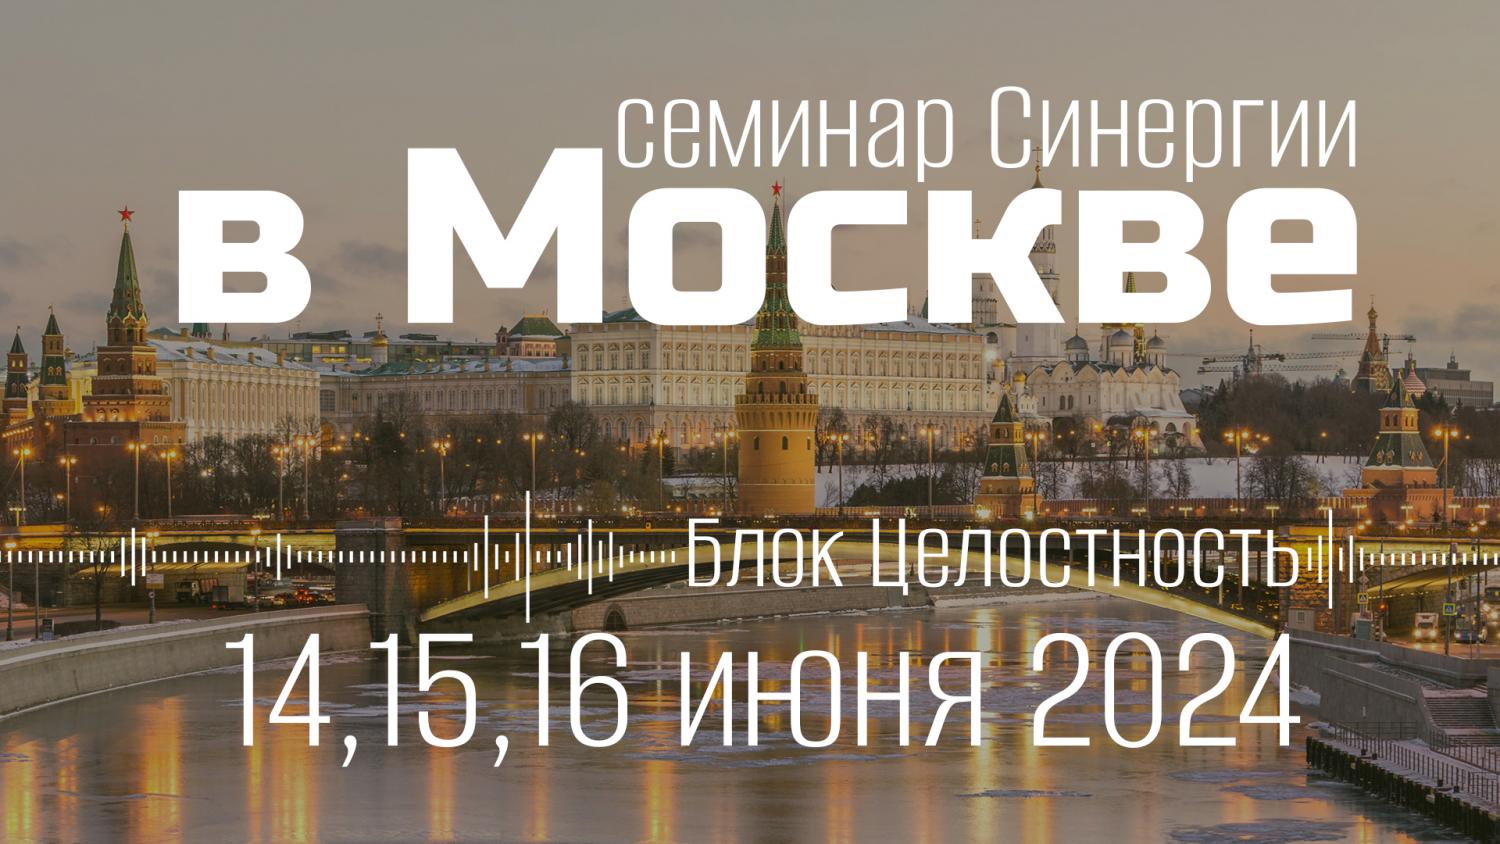 14-16 июня 2024г Целостность - семинар Дмитрия Воеводина в Москве